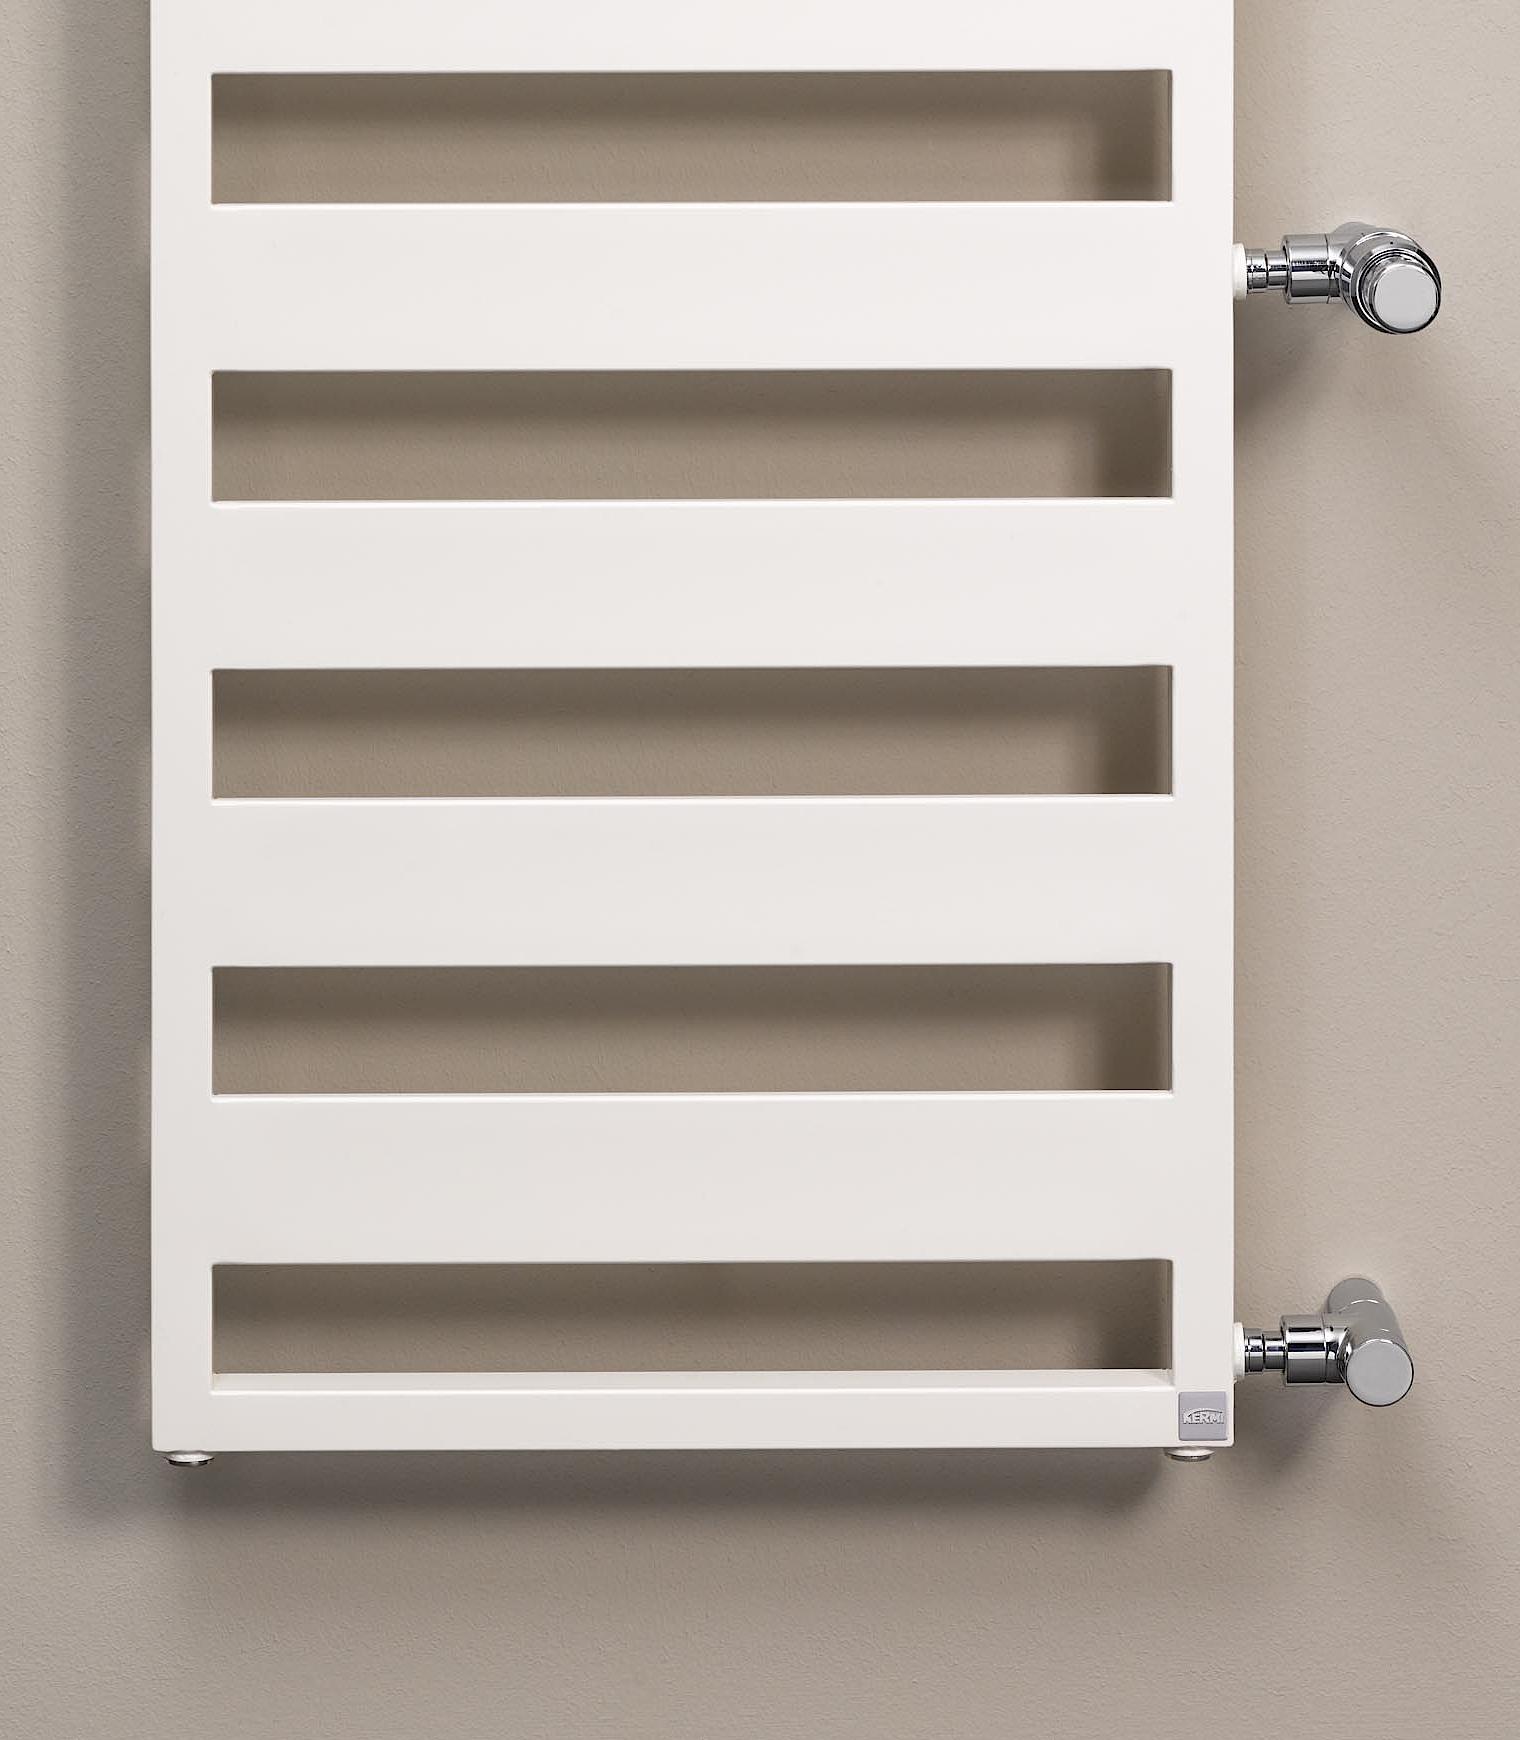 Le radiateur design et de salle de bain Casteo de Kermi constitue une solution de rénovation rapide et rationnelle pour les travaux de modernisation.